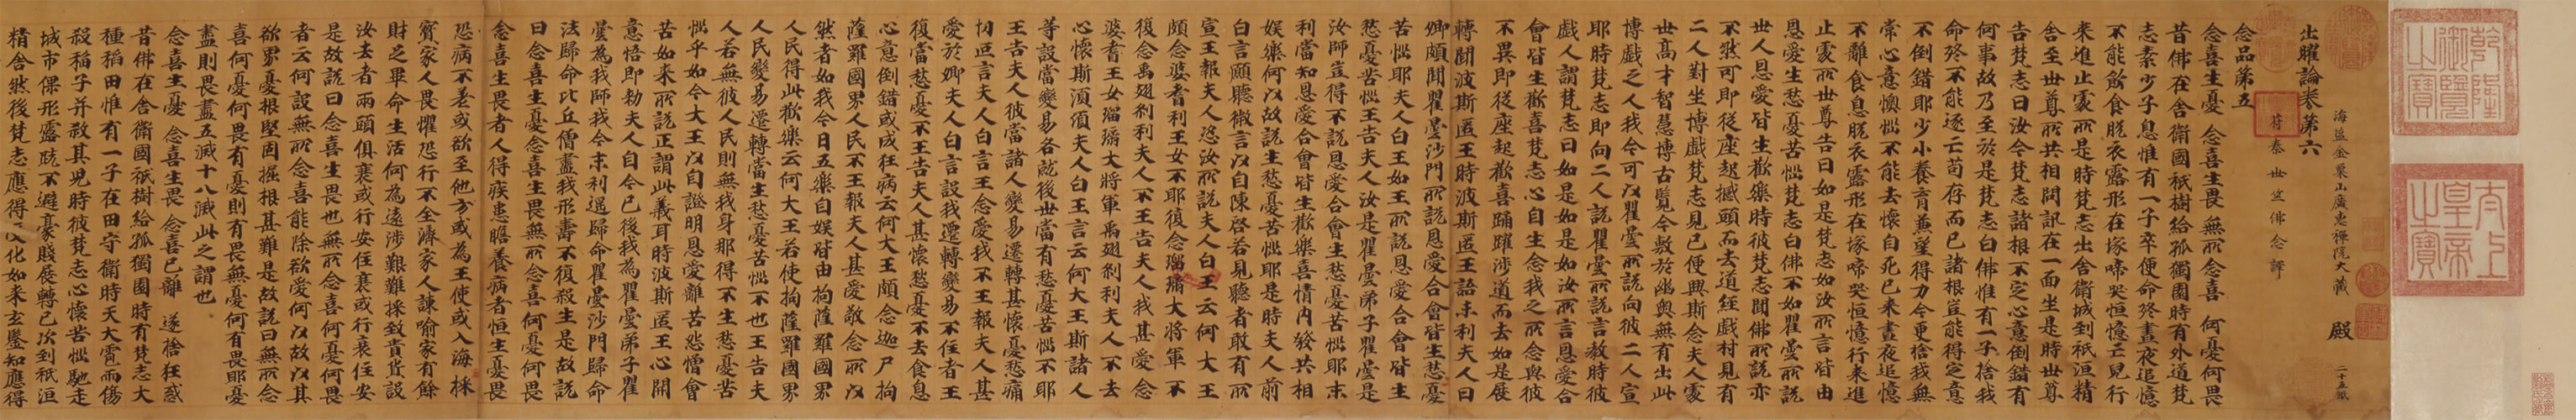 Avadana-sutra, volume 6 in small regular script